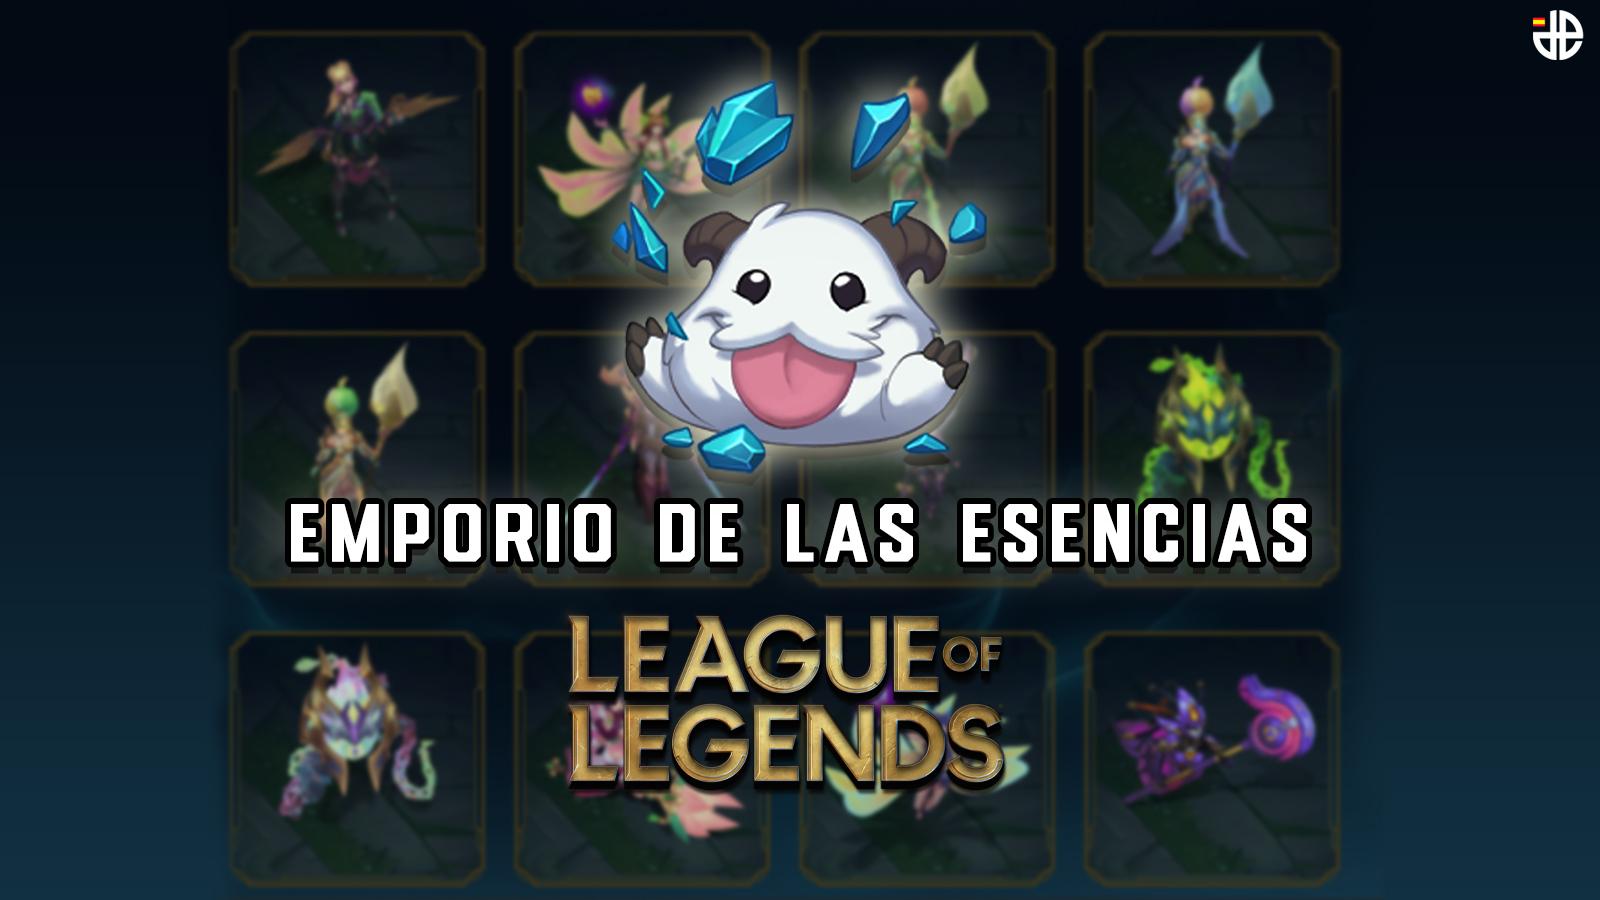 Emporio esencias league of legends